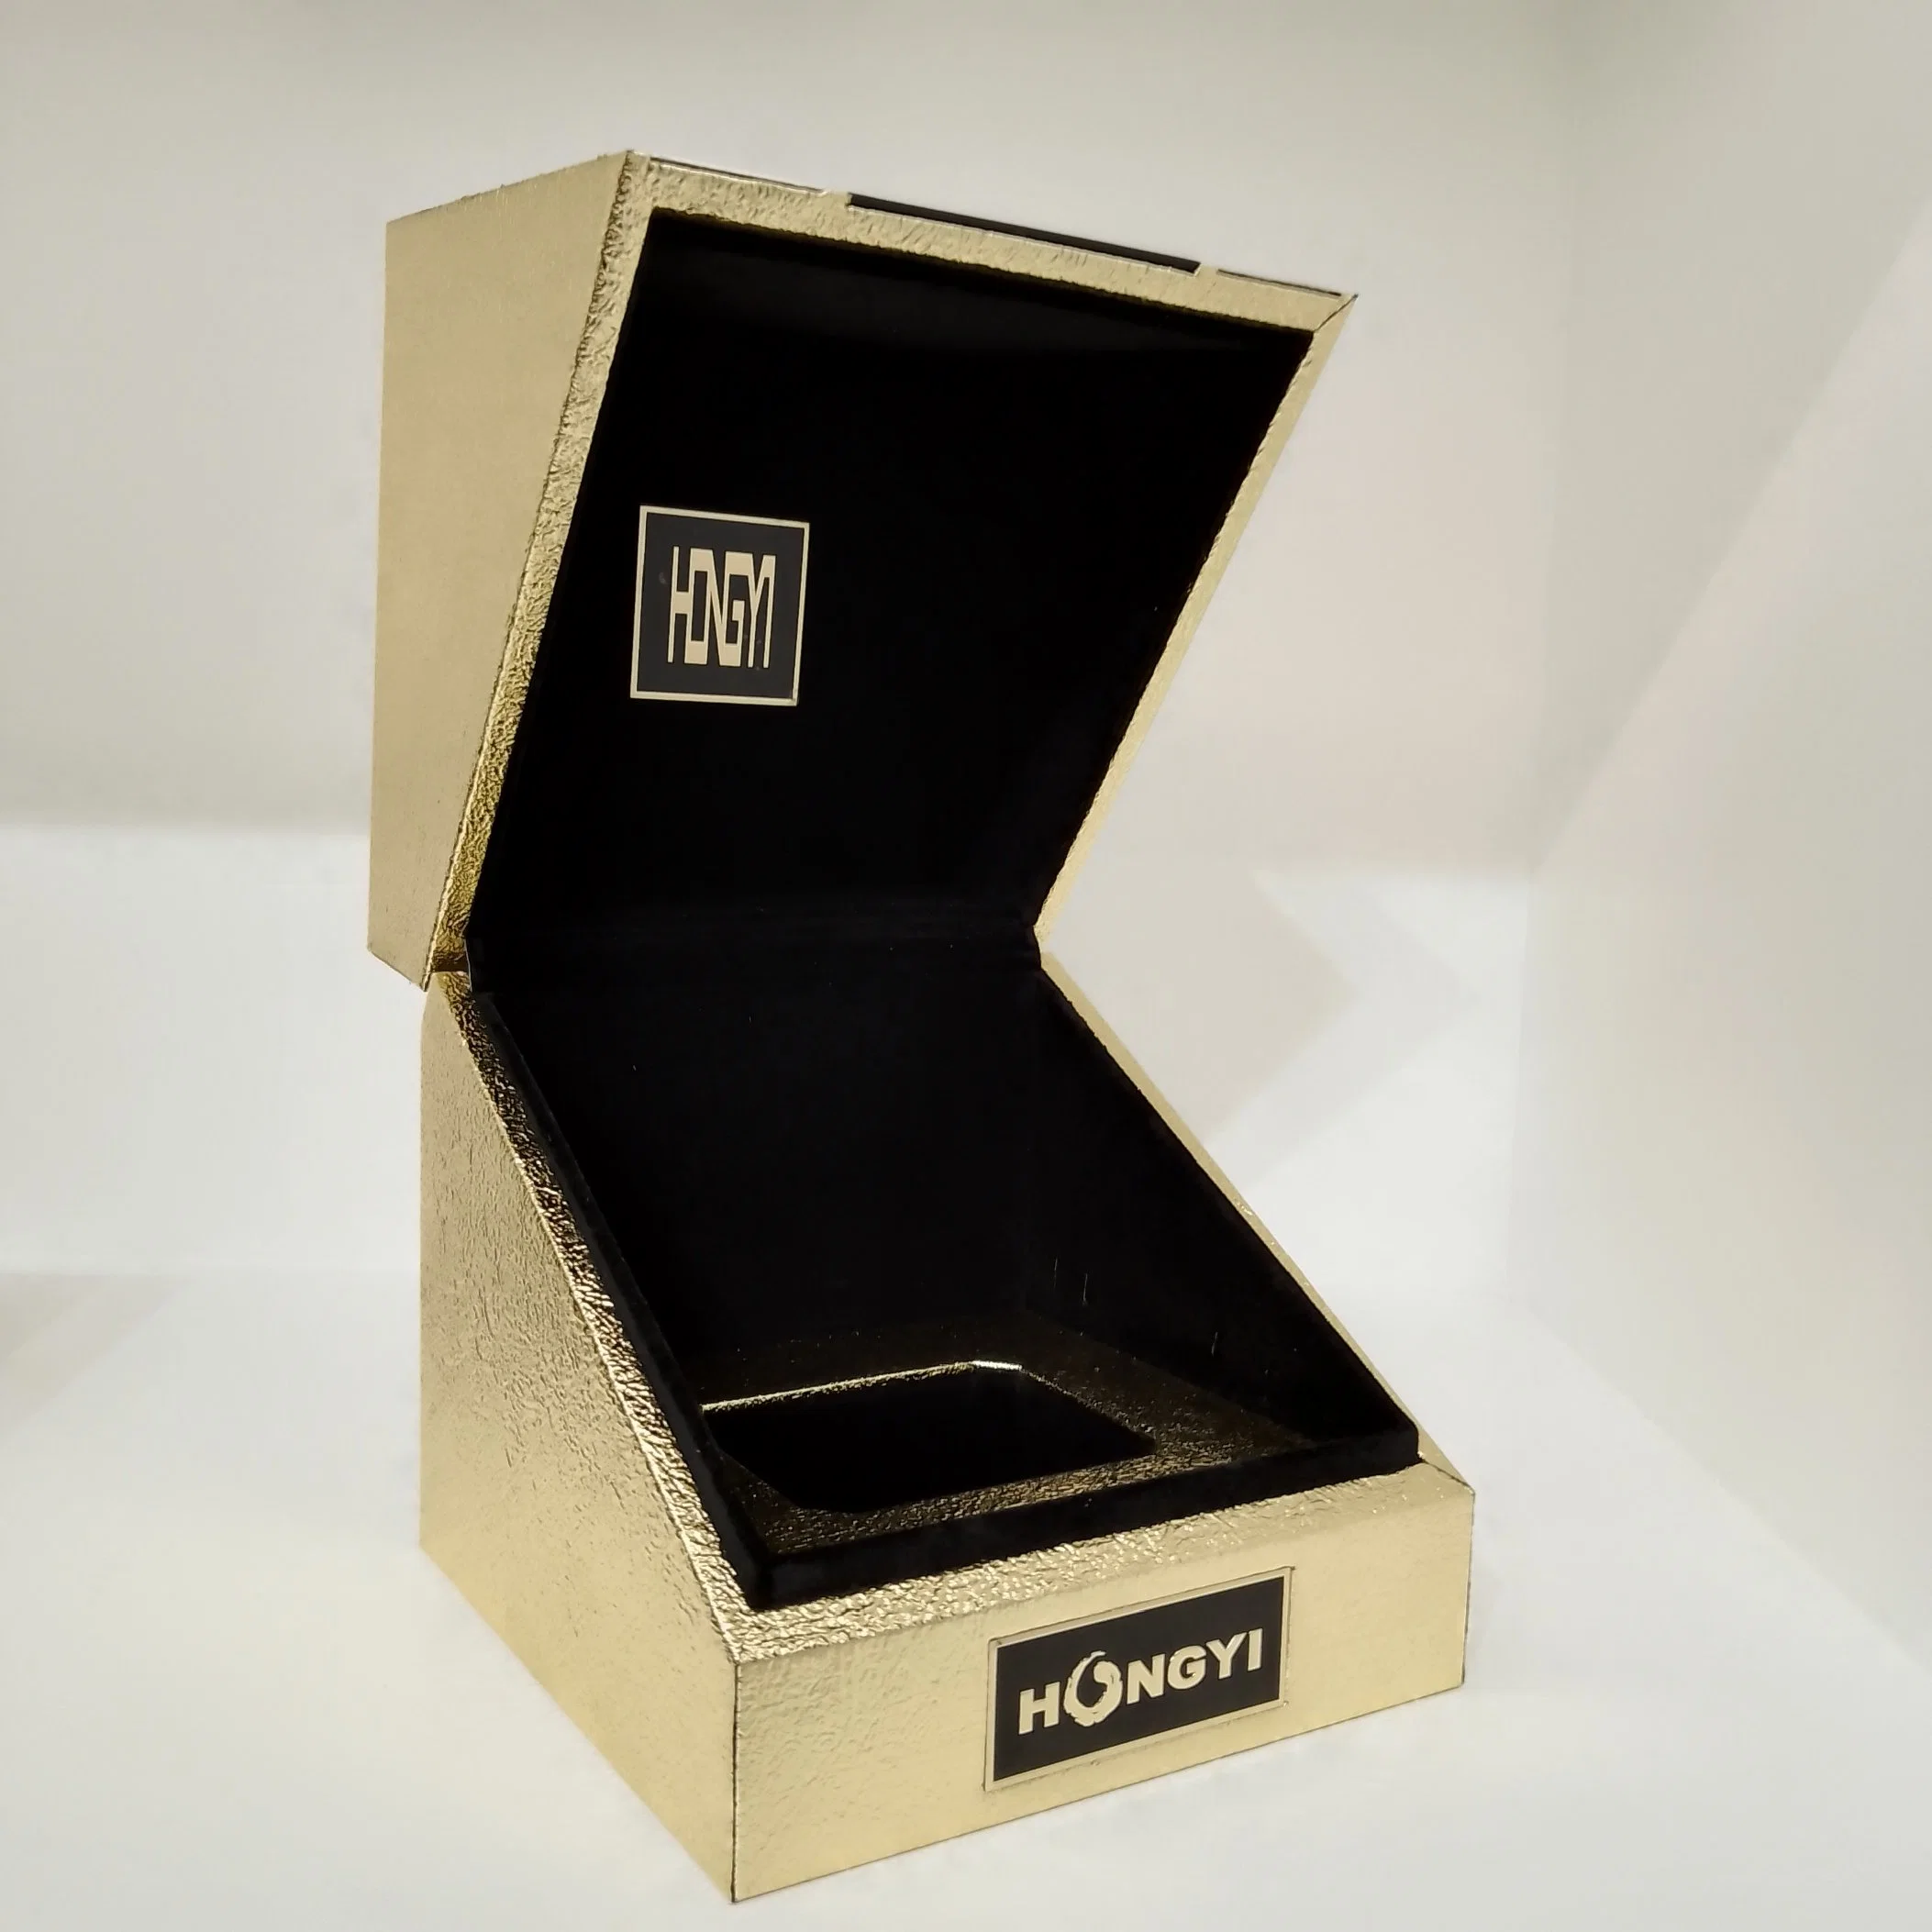 Benutzerdefinierte Box Karton Magnetverschluss Faltbare Verpackung Holz Verpackung Geschenk Box für Kleidung/Kosmetik/Kunst und Kunsthandwerk/Kerze/Geschenk/Parfüm